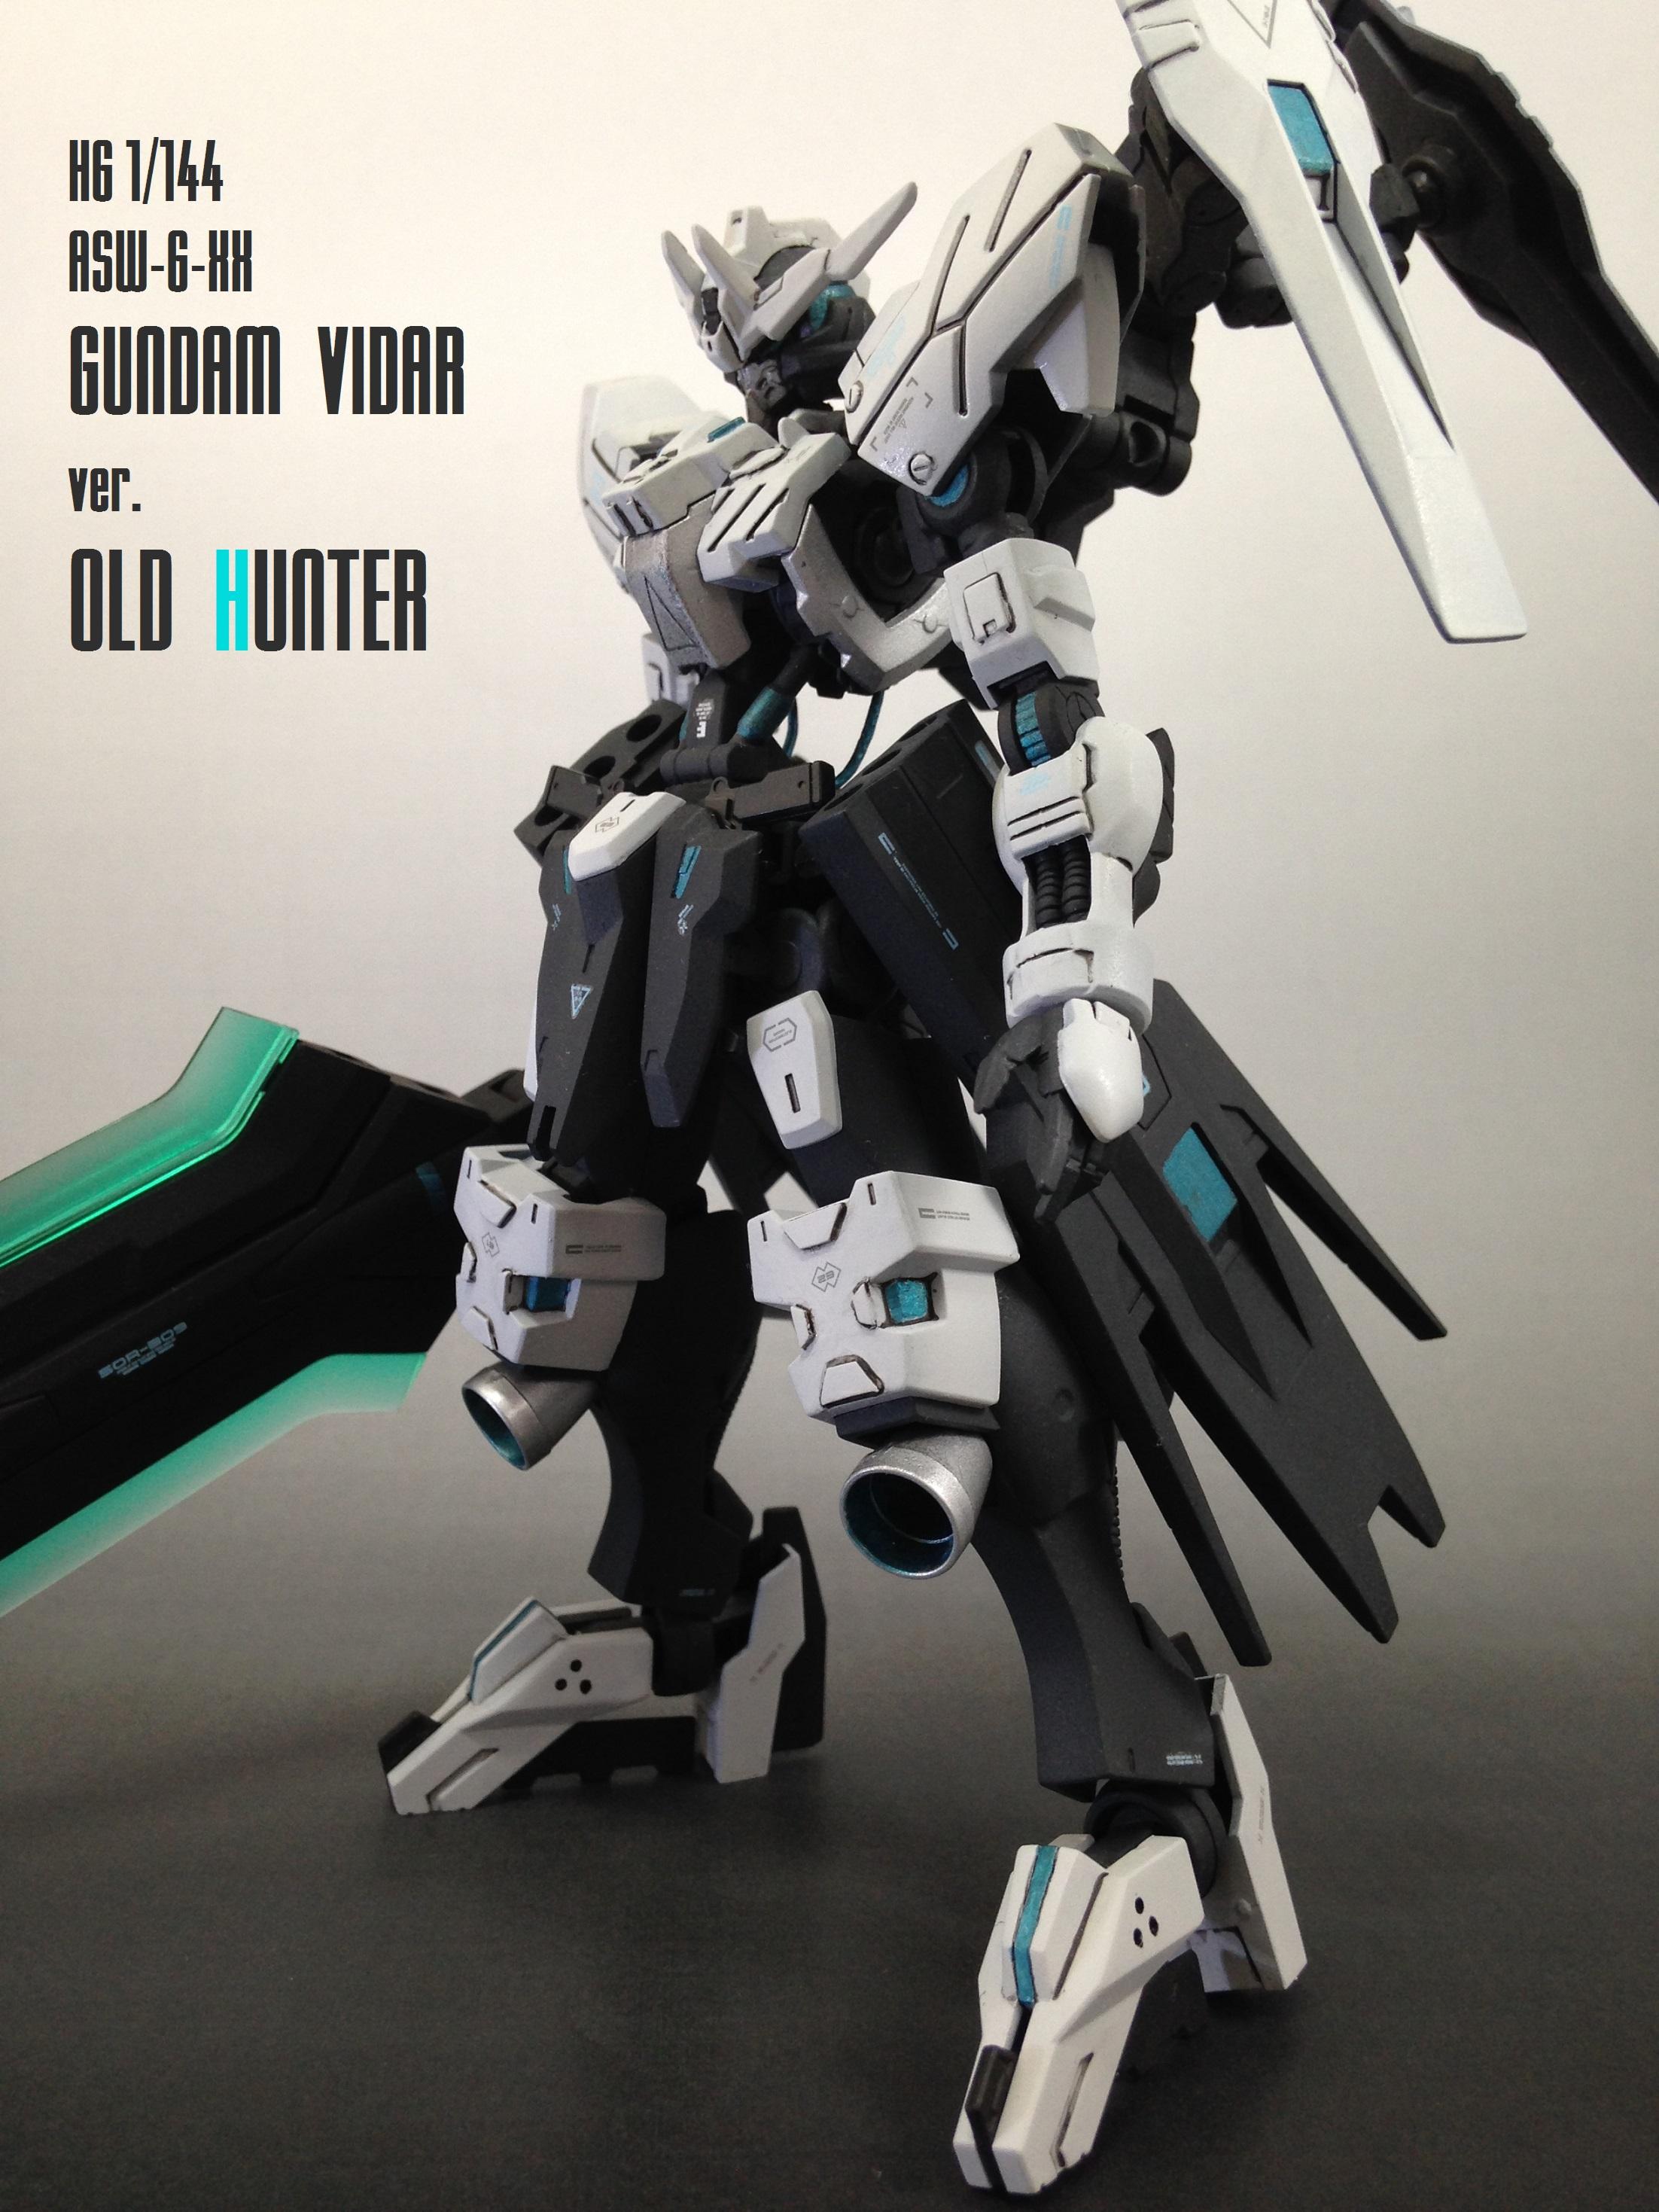 Hgibo ガンダムヴィダール作例 Gundam Vidar Ver Old Hunter ガンプラ